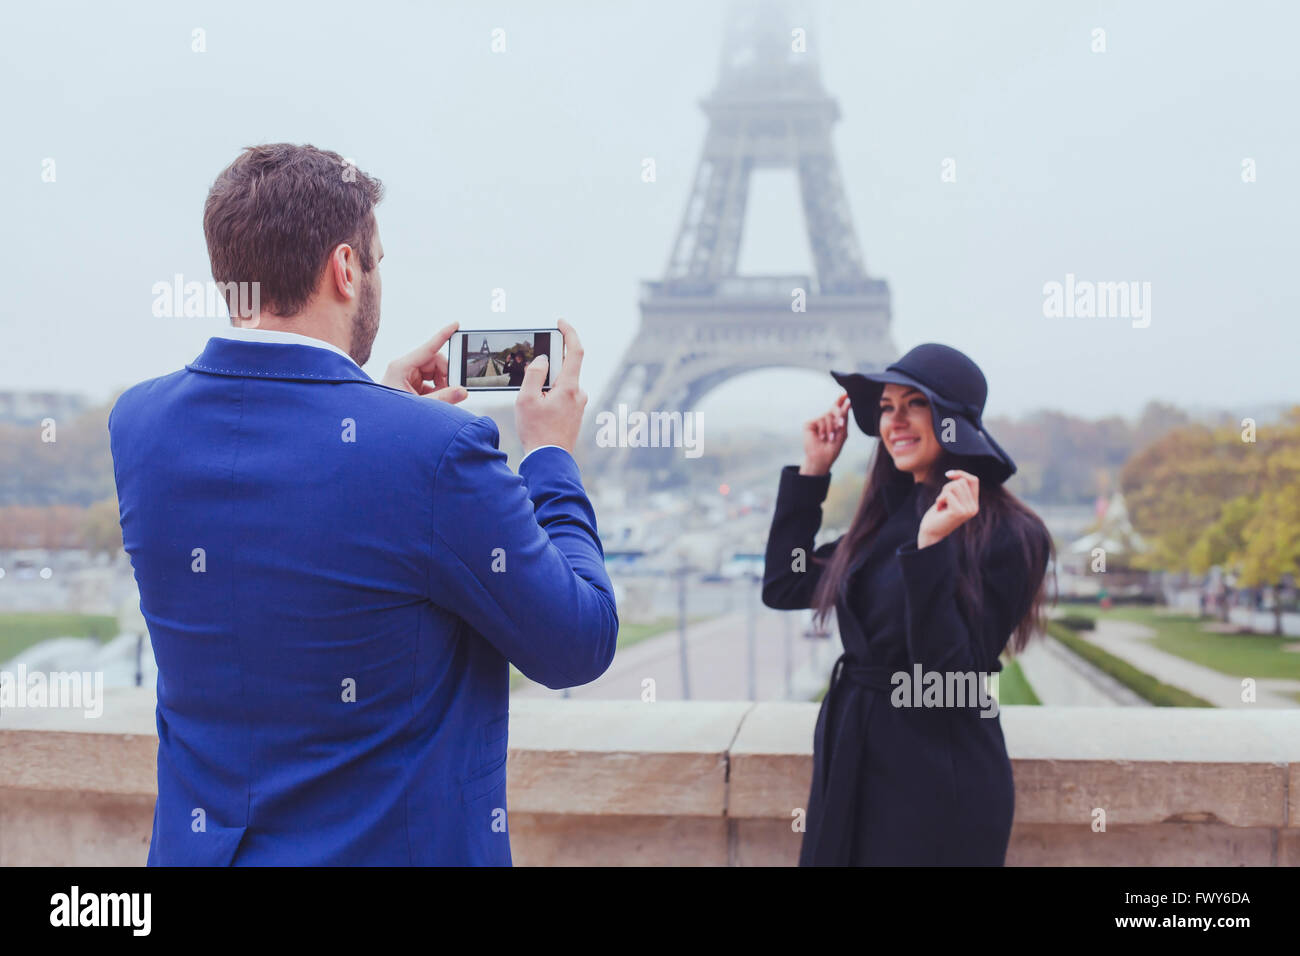 La photographie mobile, l'homme de prendre la photo d'une femme avec son téléphone, un couple de touristes près de la Tour Eiffel à Paris, France Banque D'Images